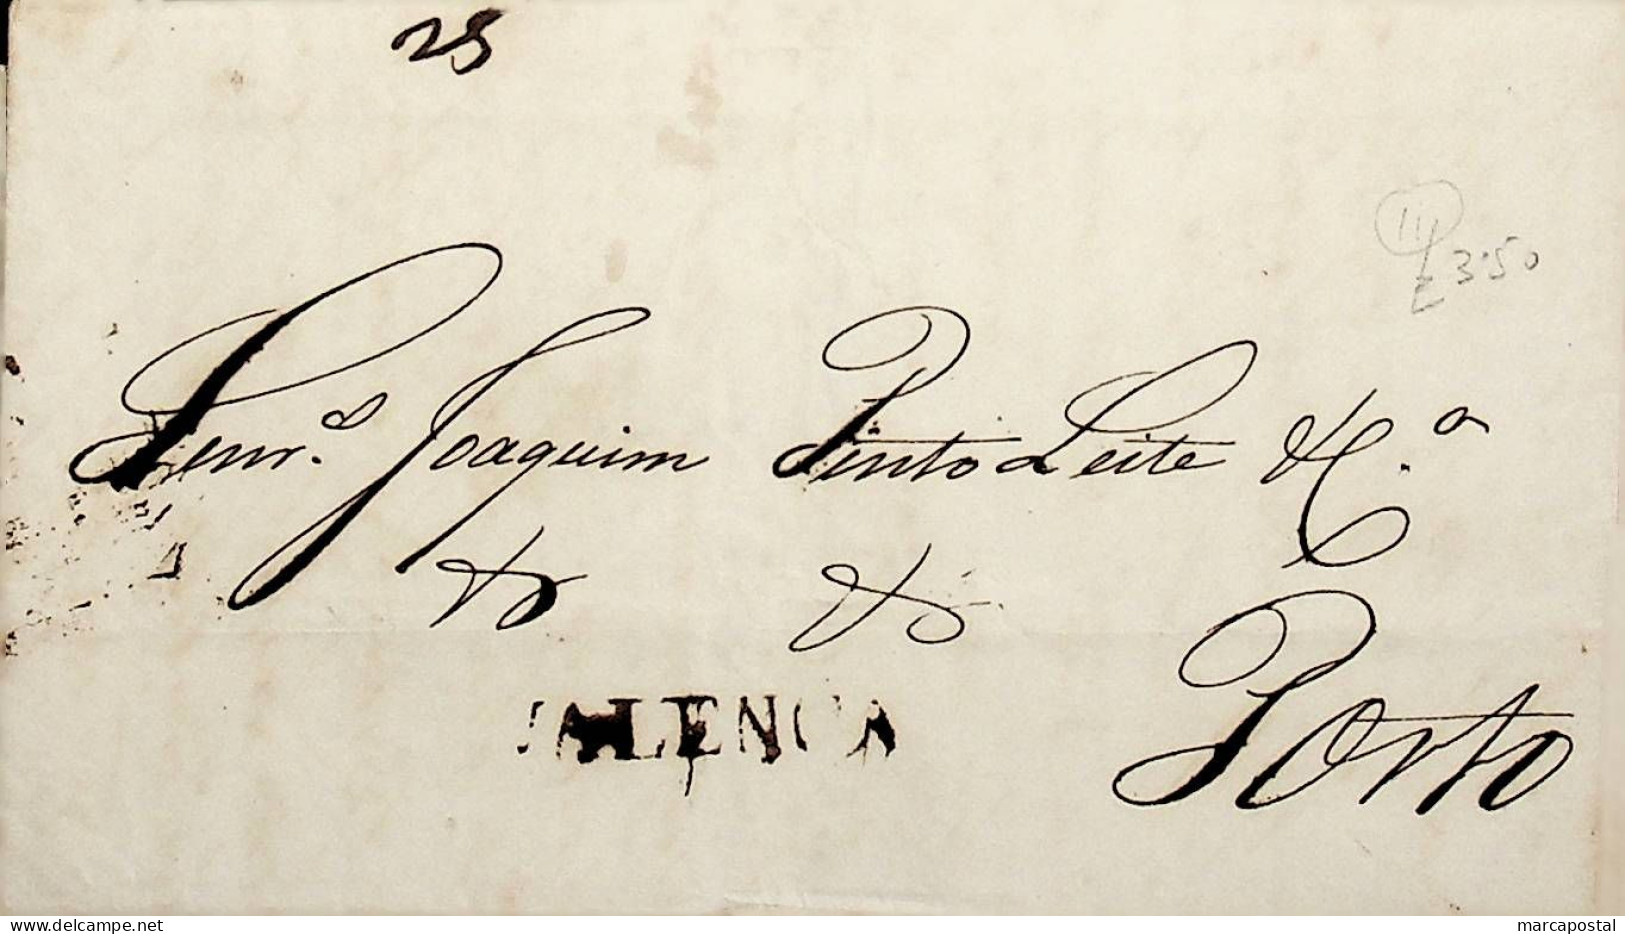 1835 Portugal Carta Pré-filatélica VLN 2 «VALENCA» Sépia - ...-1853 Prefilatelia